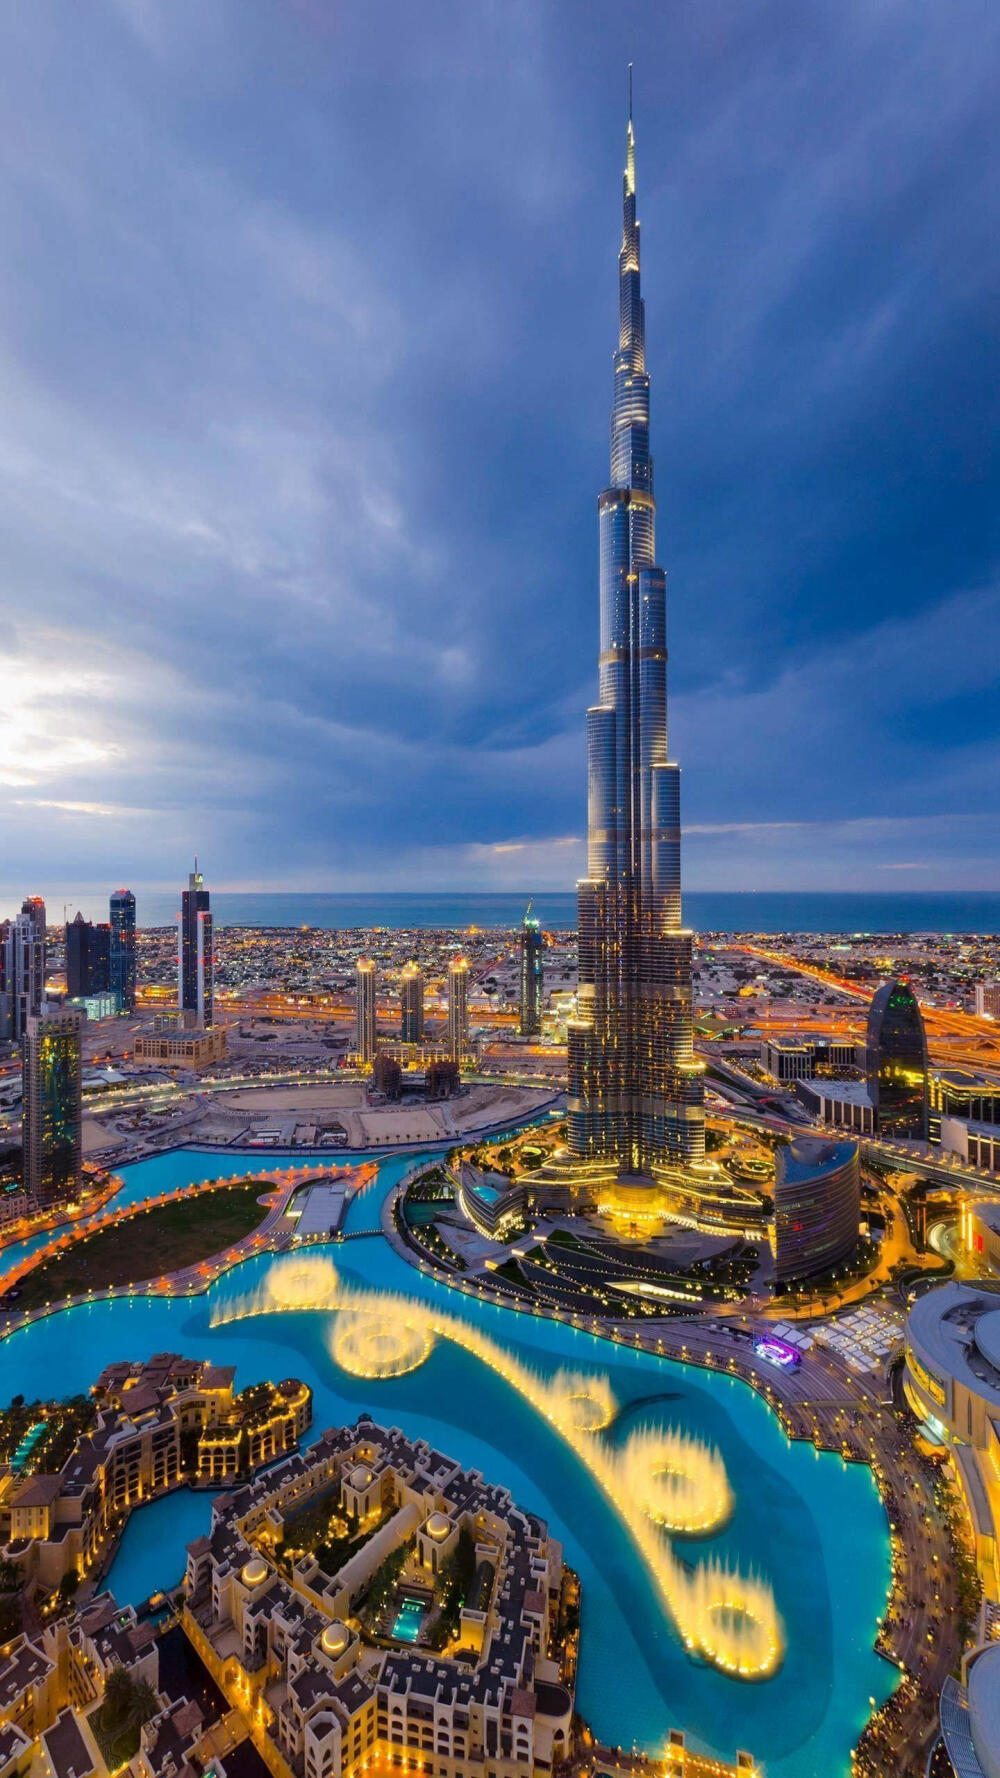 迪拜—华为杂志锁屏 迪拜是中东地区的经济金融中心,被评为2018年世界